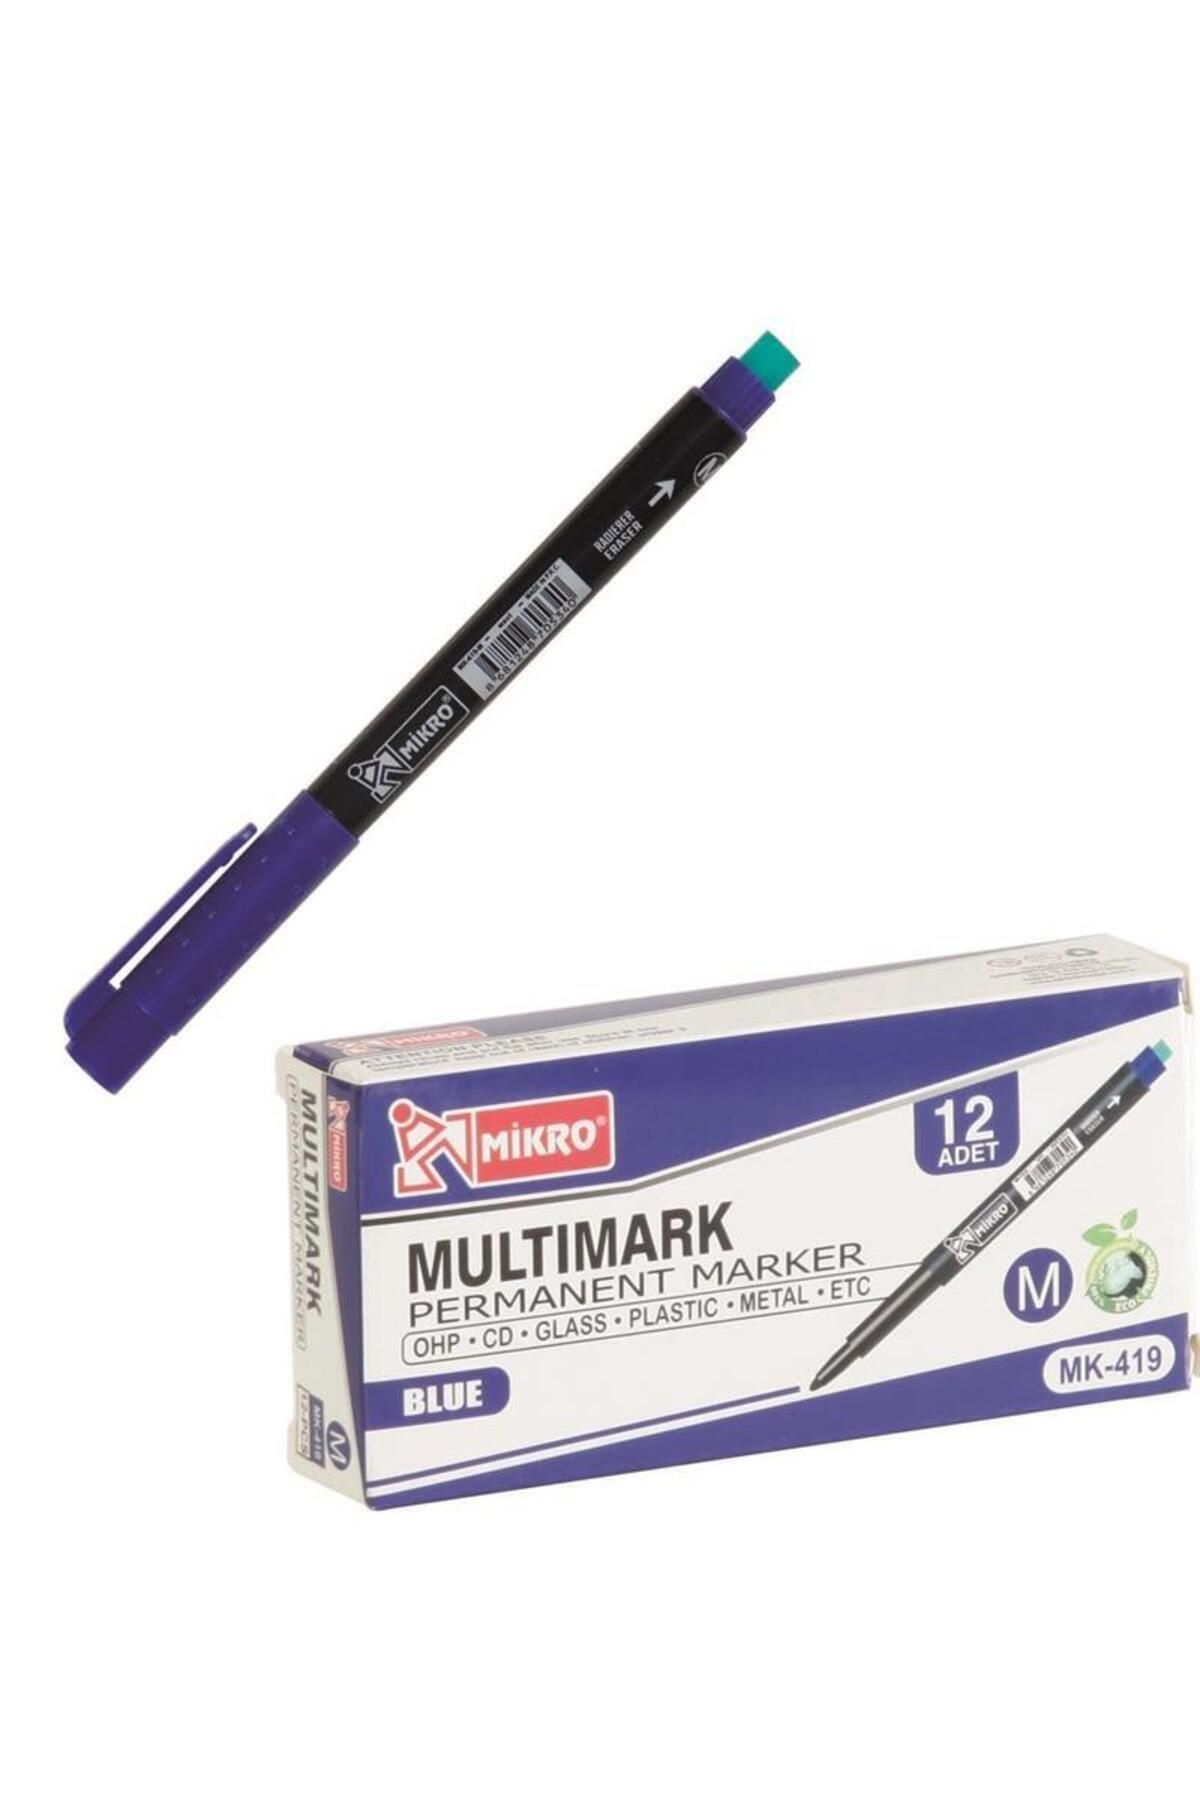 Mikro Multimark Permanent Marker OHP CD Asetat Kalemi Mavi M Uç 12 Adet Set Paket